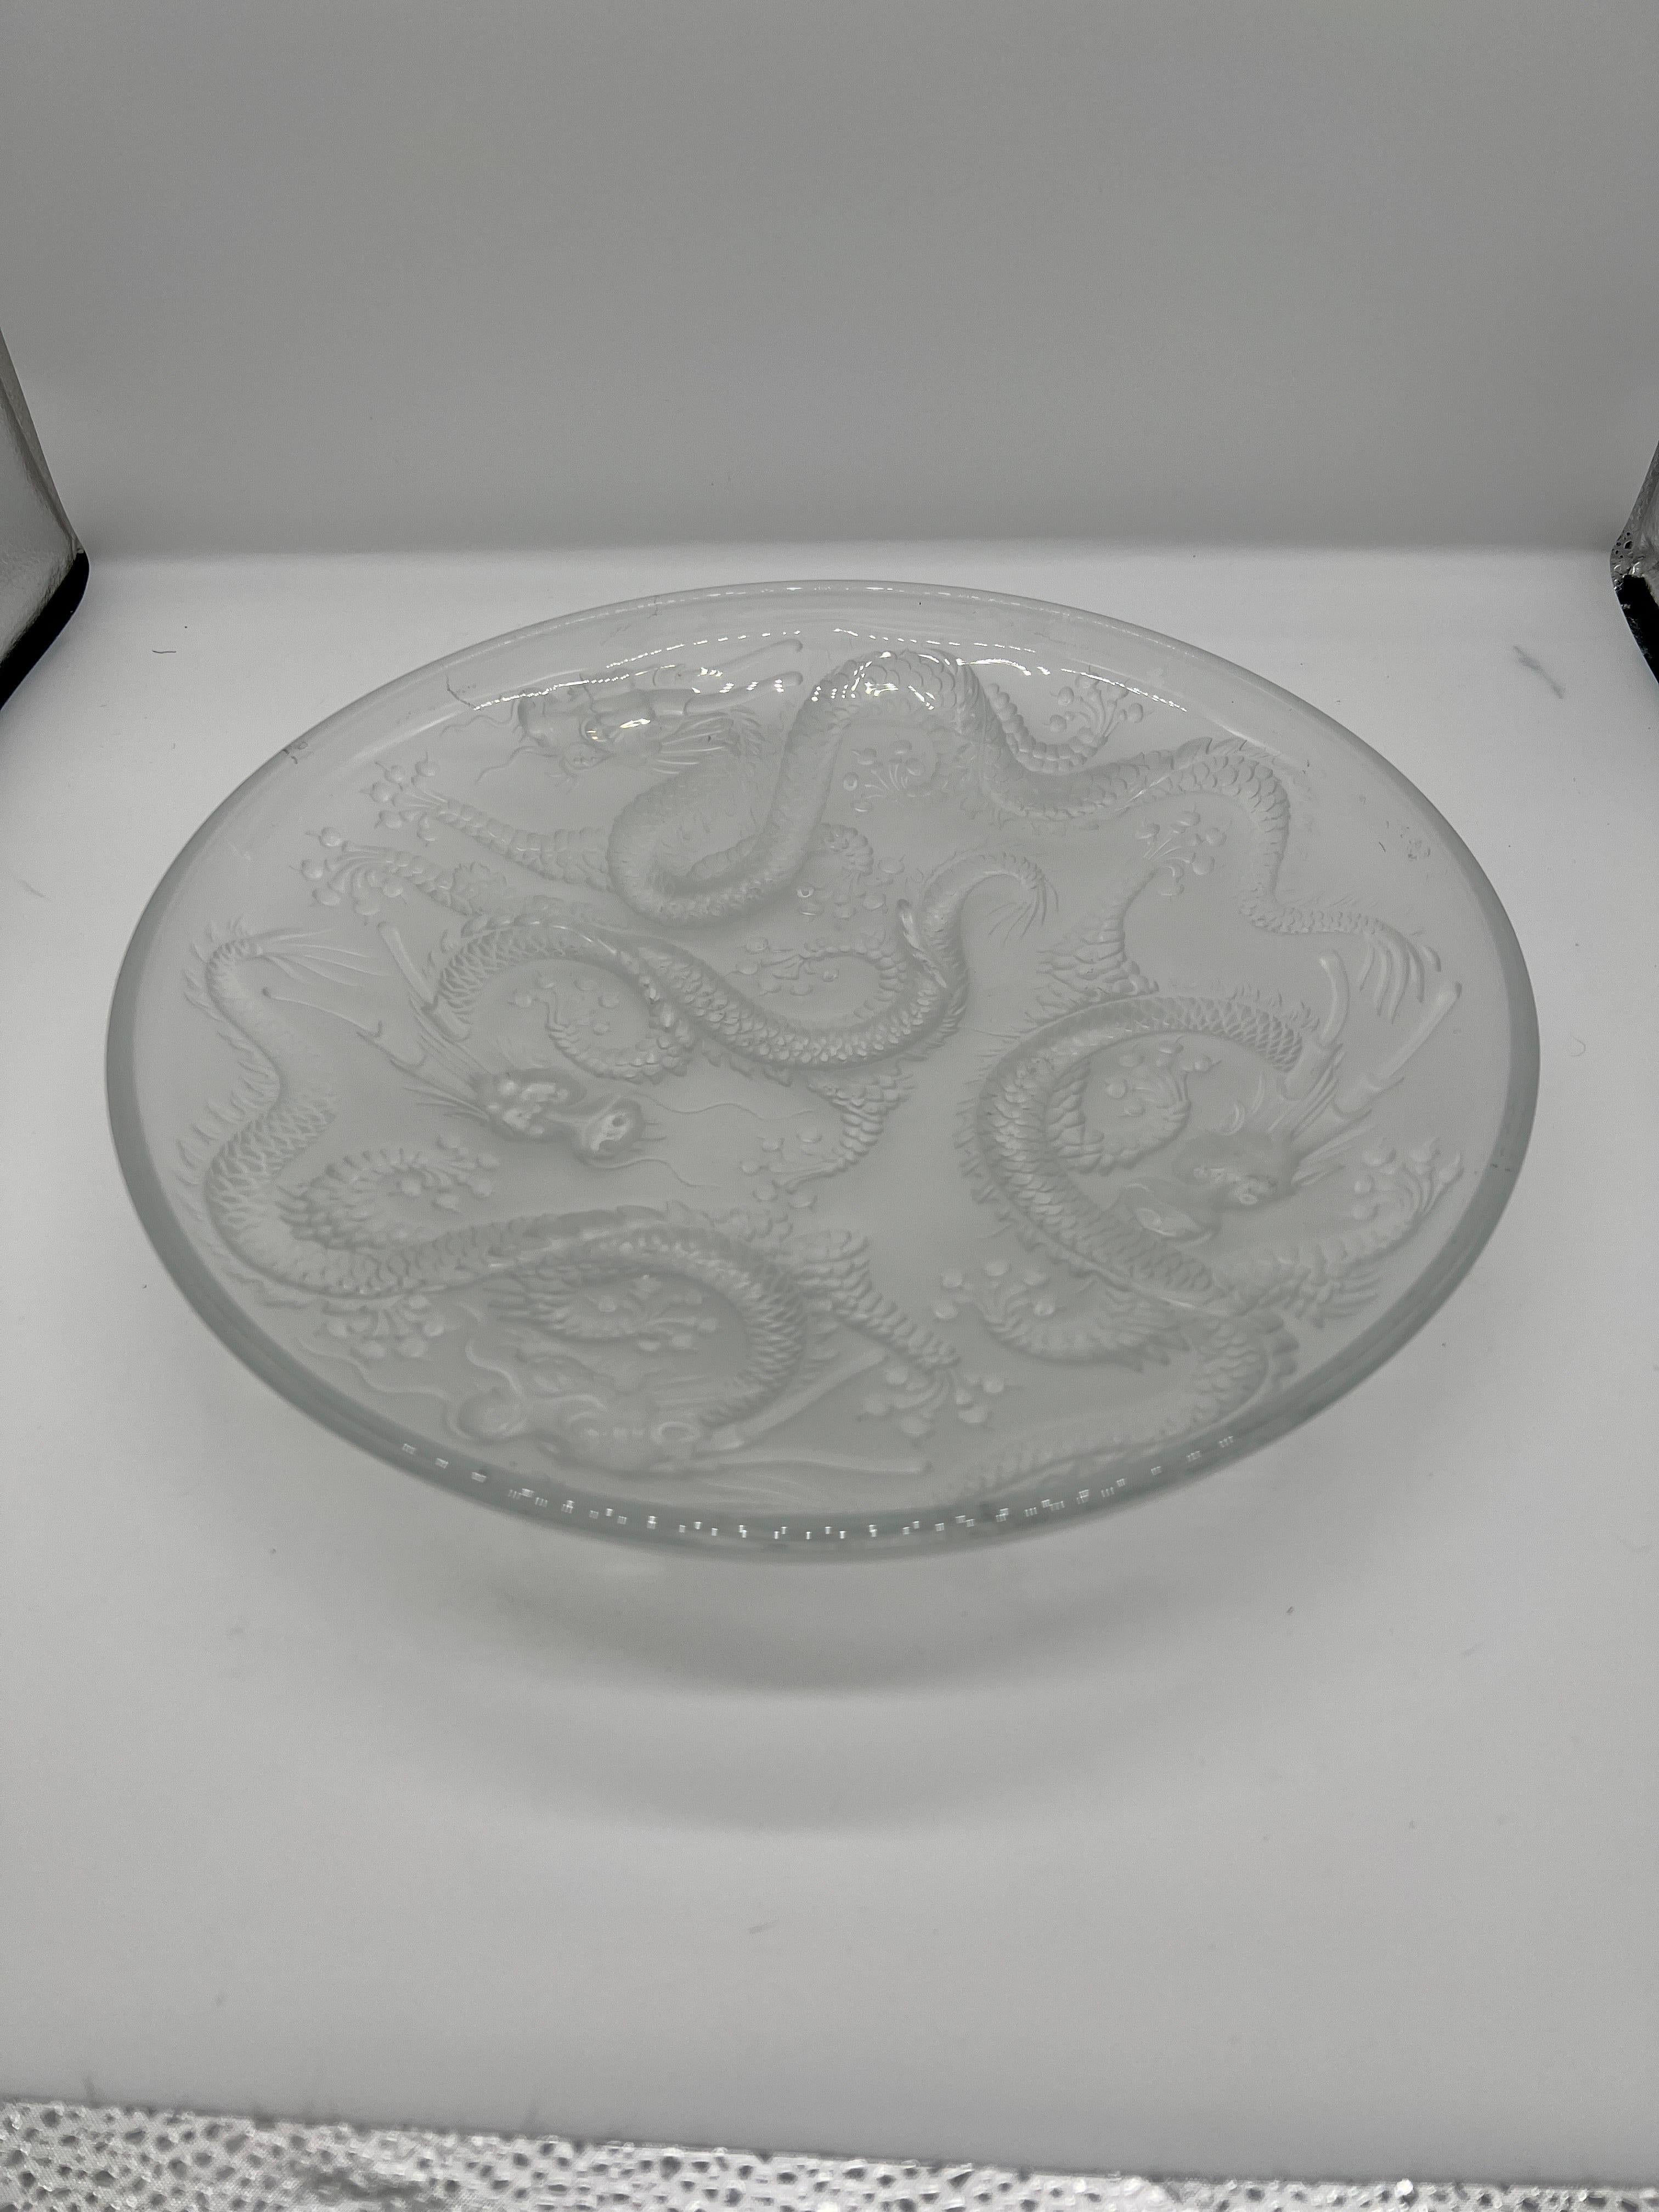 Josef Inwald, um 1930. 

Eine gute Qualität und große Platte aus Glas mit 4 Drachen. Schönes Chinoiserie-Dekor auf der Oberfläche - bekanntes Muster. 

